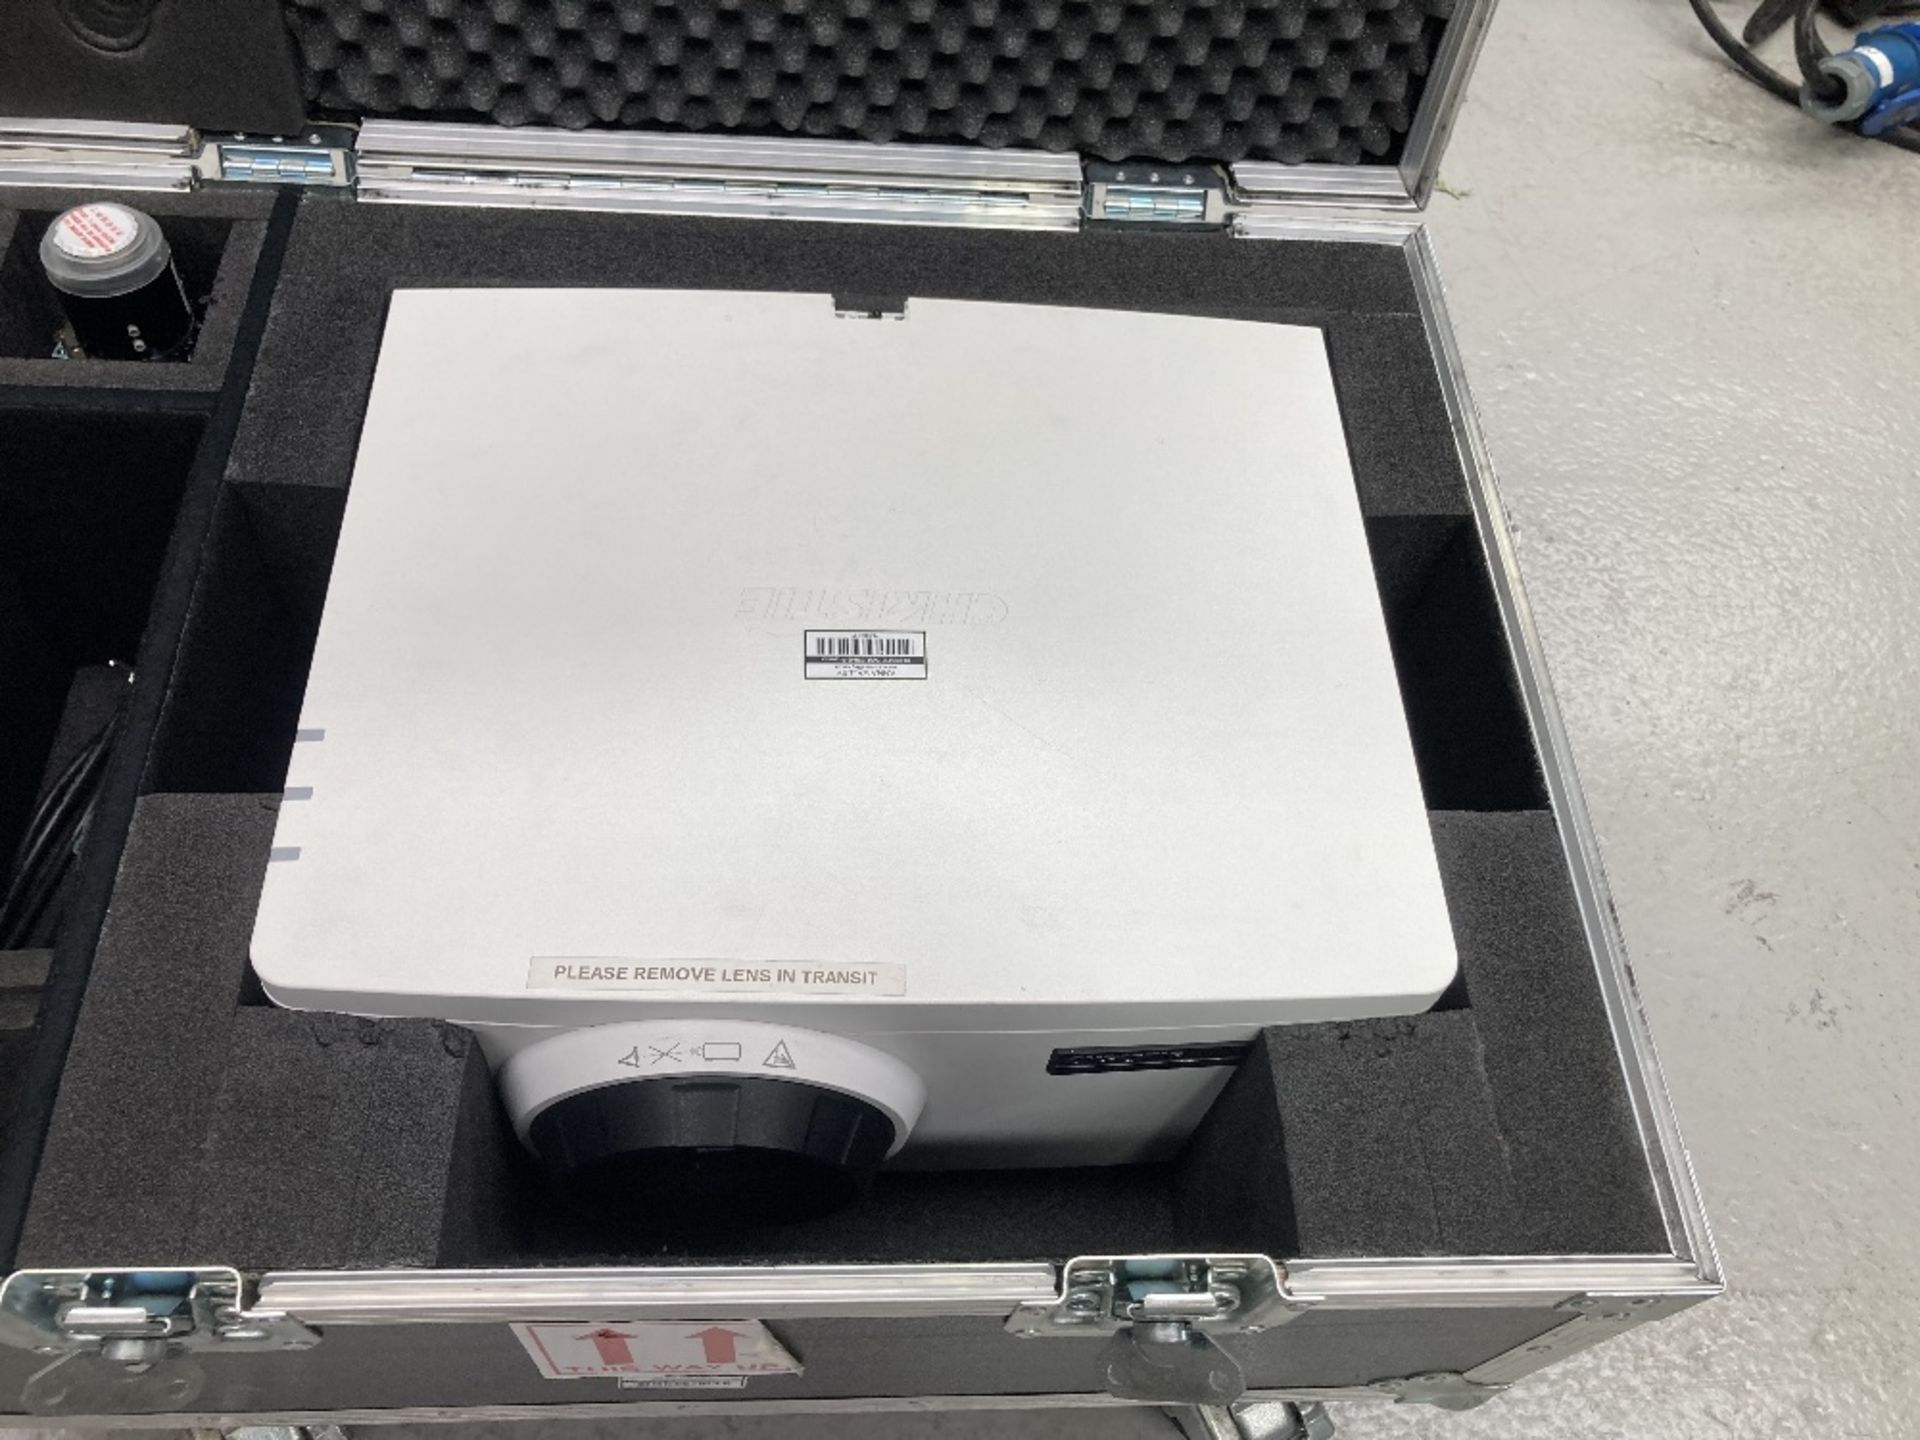 Christie DWU550-G Projector, 0.95-1.2 Zoom Lens & Heavy Duty Flight Case - Image 7 of 11